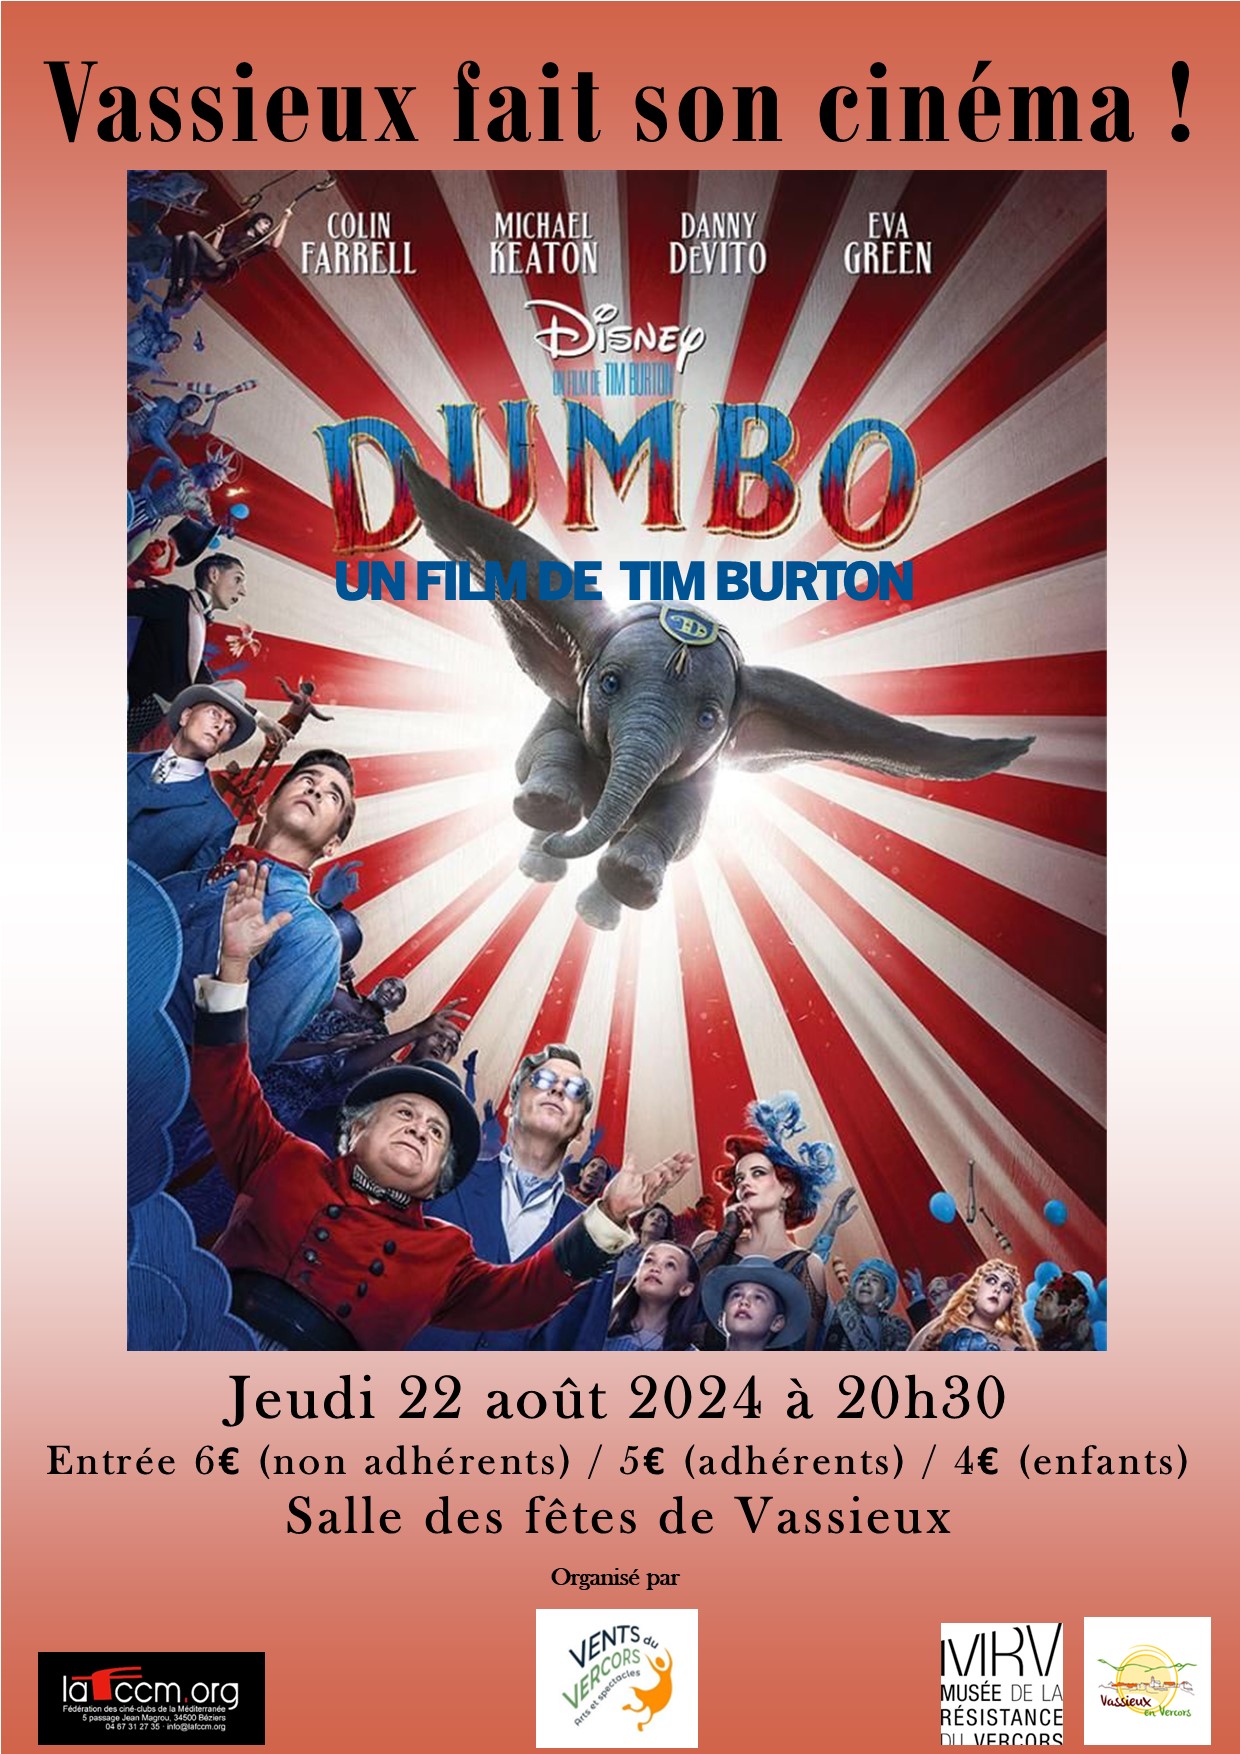 Vassieux fait son cinéma - Dumbo de Tim Burton